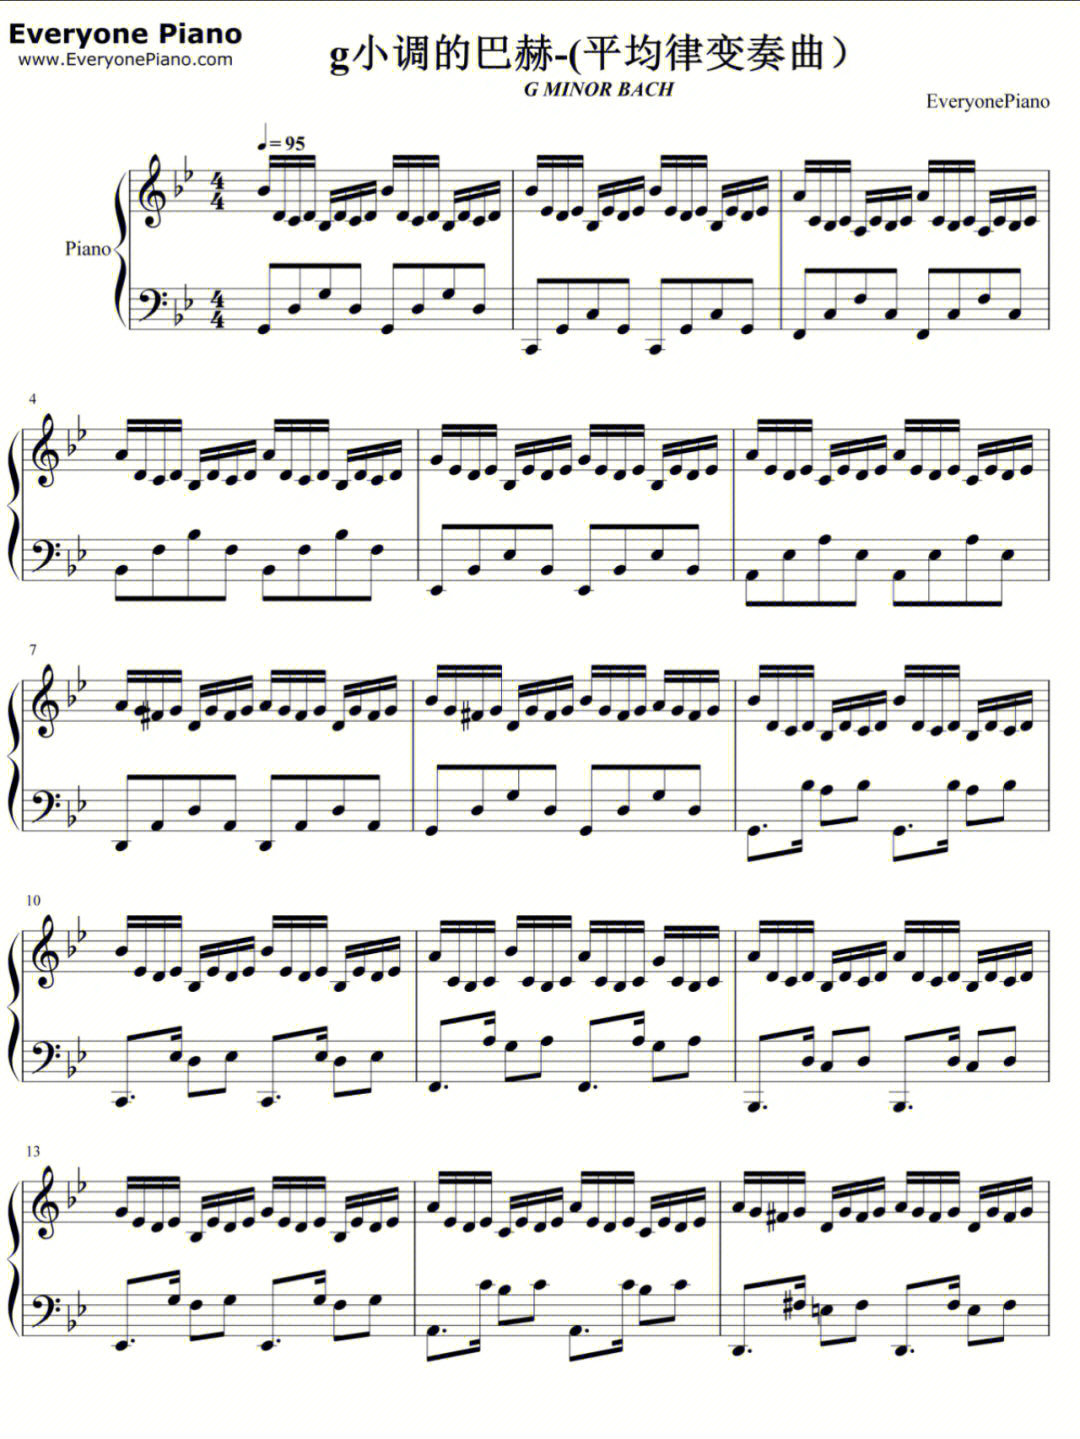 钢琴曲g小调的巴赫平均律变奏曲谱